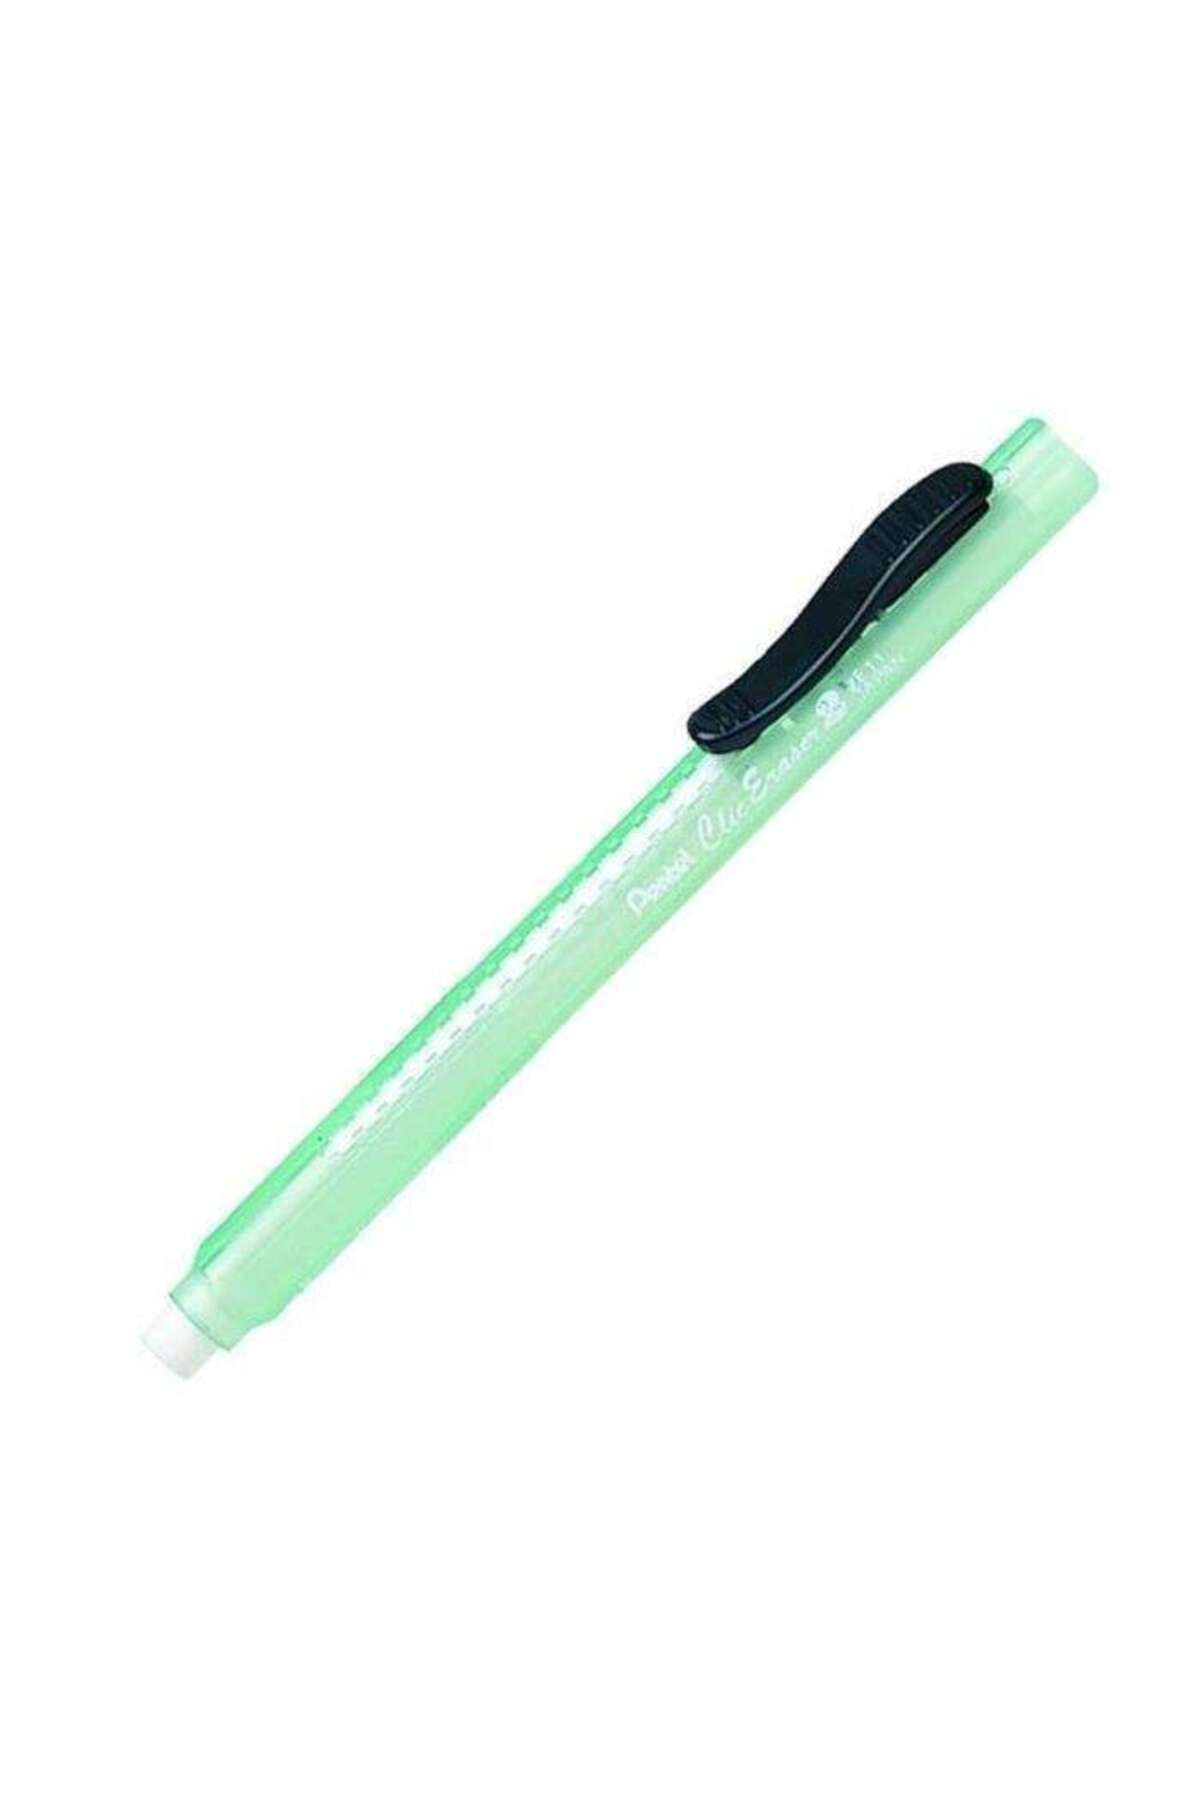 Pentel Basmalı Kalem Silgi Yeşil Nze11